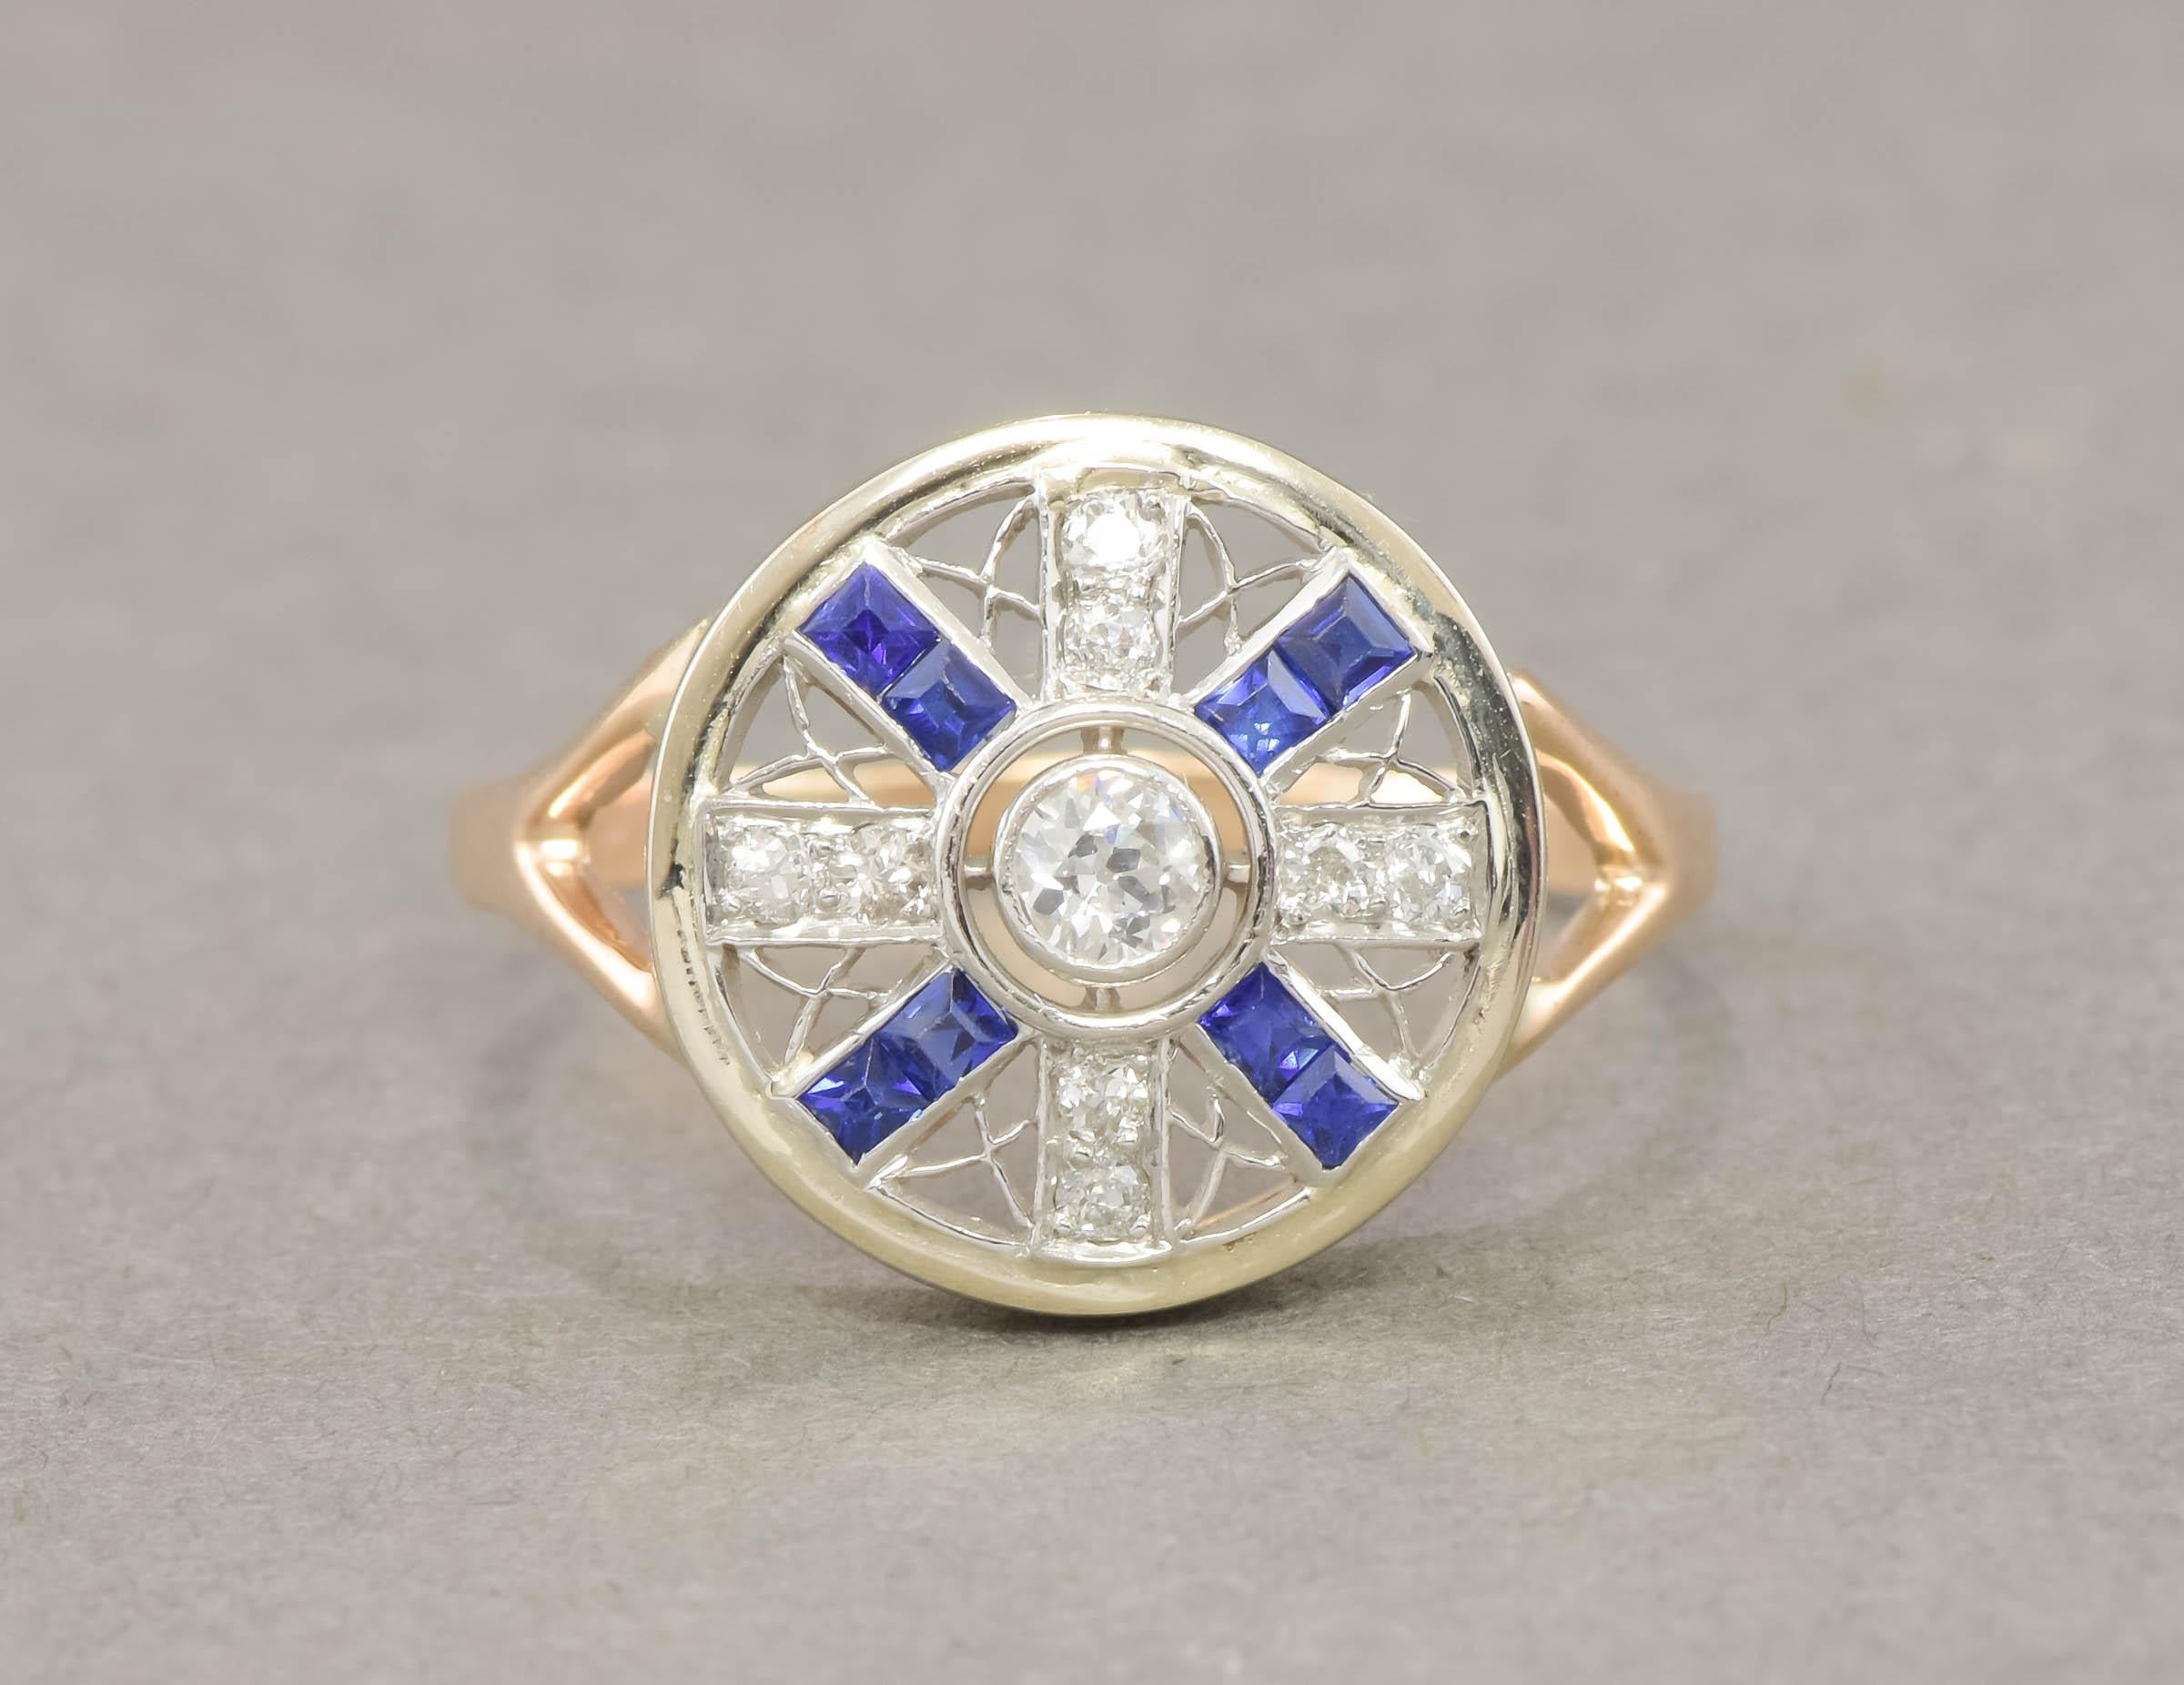 Dieser Ring mit einem altgeschliffenen Diamanten und einem synthetischen Saphir stammt aus der Zeit des Art déco und besticht durch sein fantastisches Design und seine Präsenz an der Hand.

Der aus Platin und 14-karätigem Gelb- und Weißgold